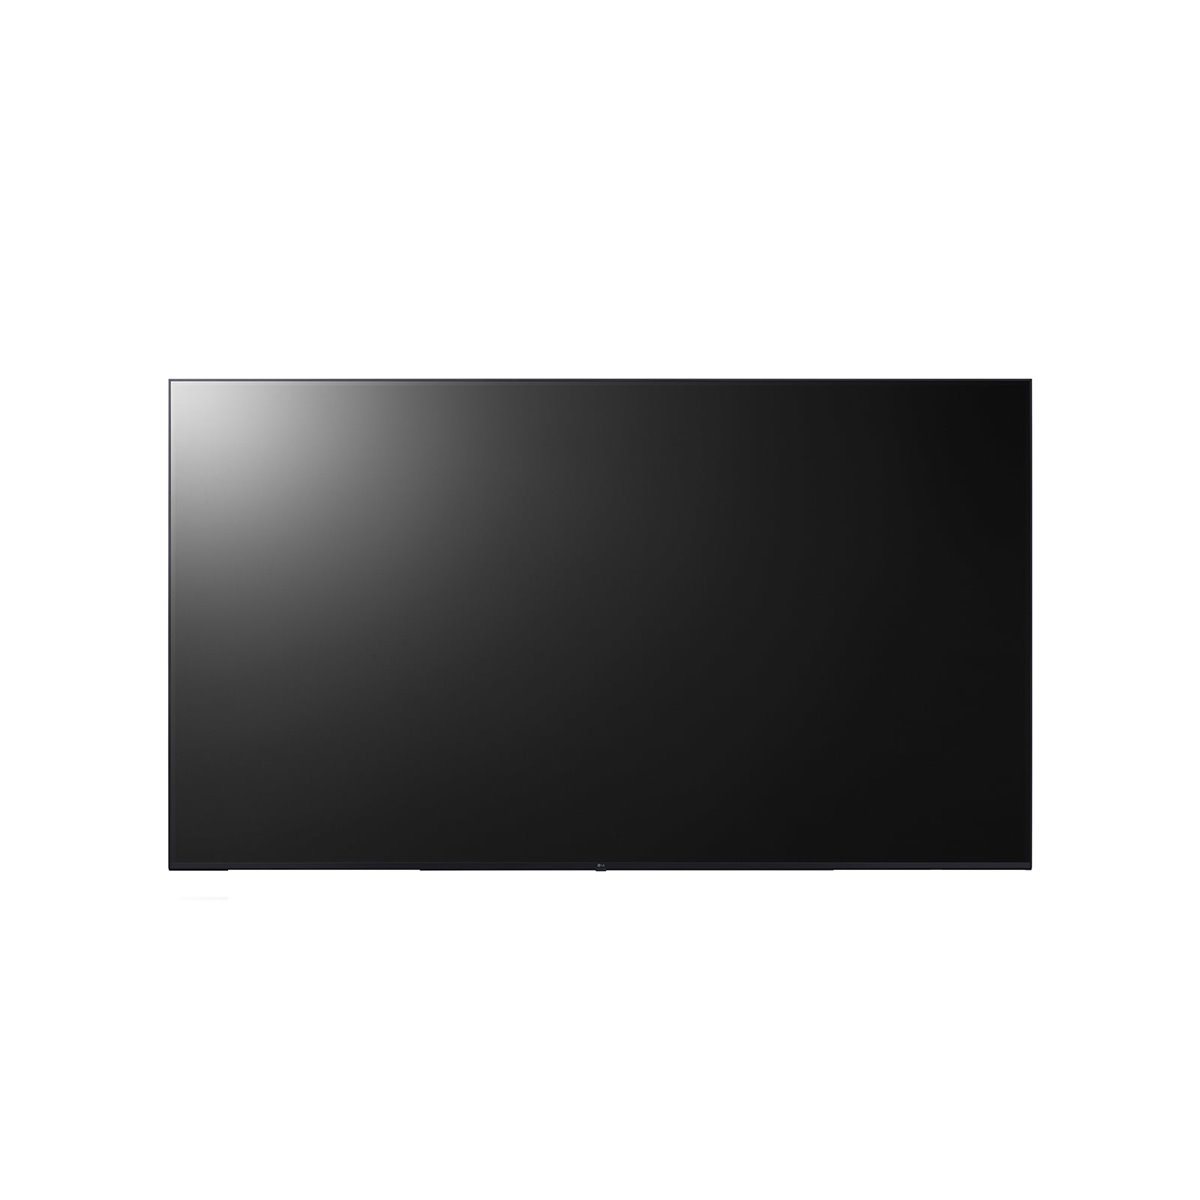 LG 75UL3J-B - Digital signage flat panel - 190.5 cm (75) - IPS - 3840 x 2160 pixels - Wi-Fi - 16-7